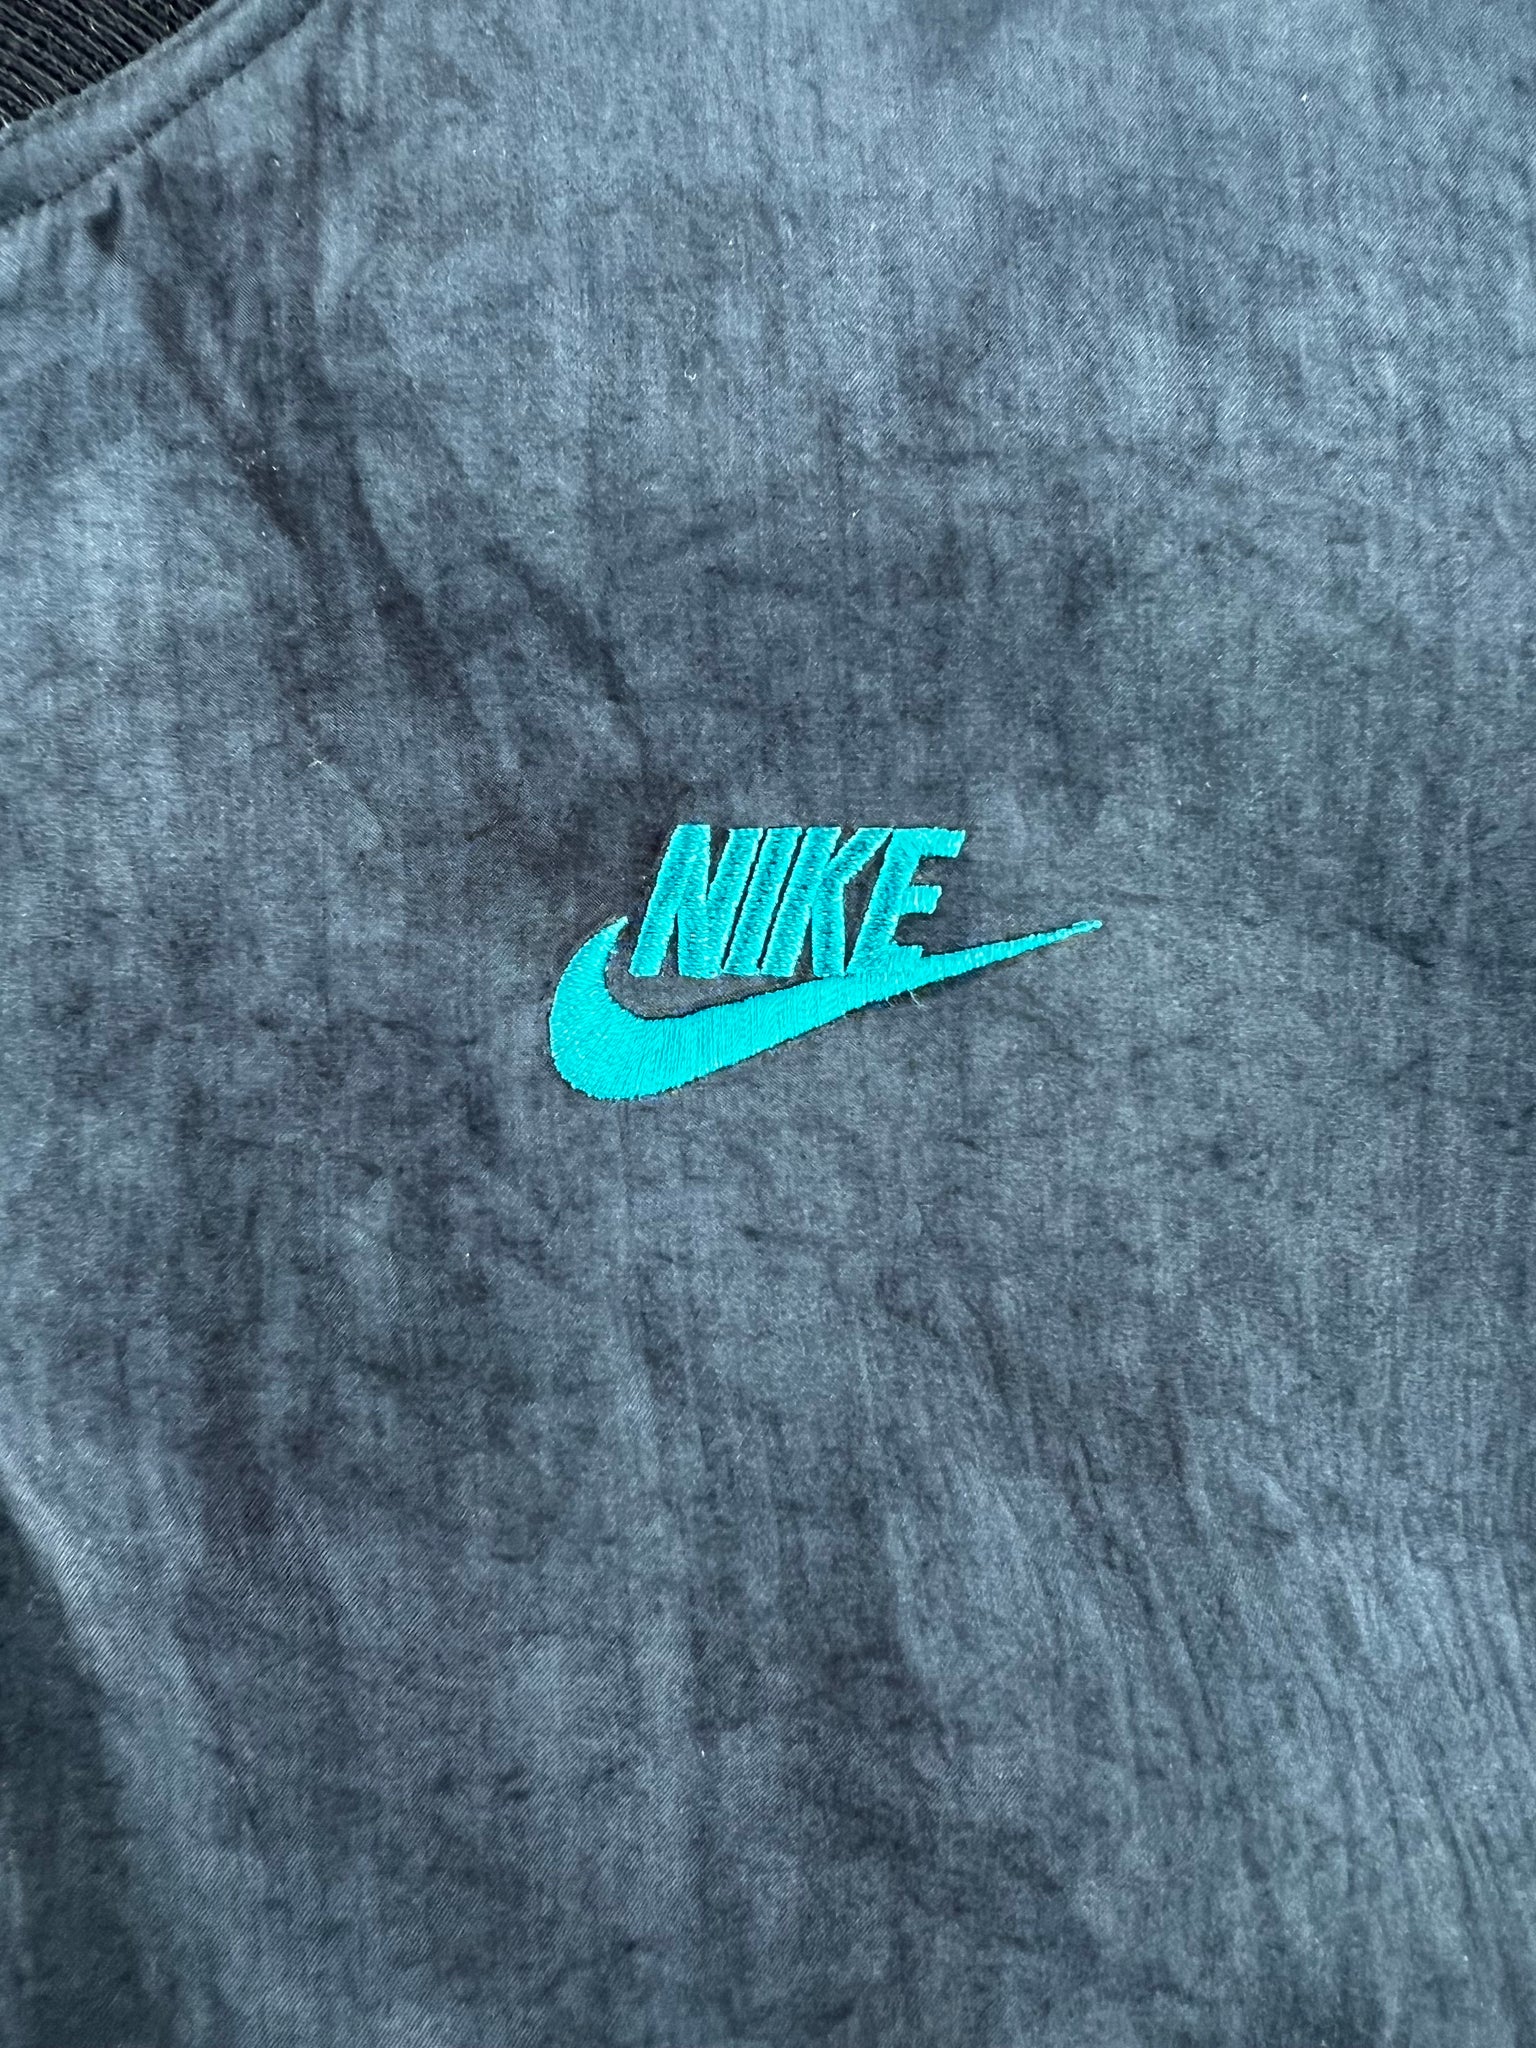 90s deadstock Nike Force jacket fits L/XL